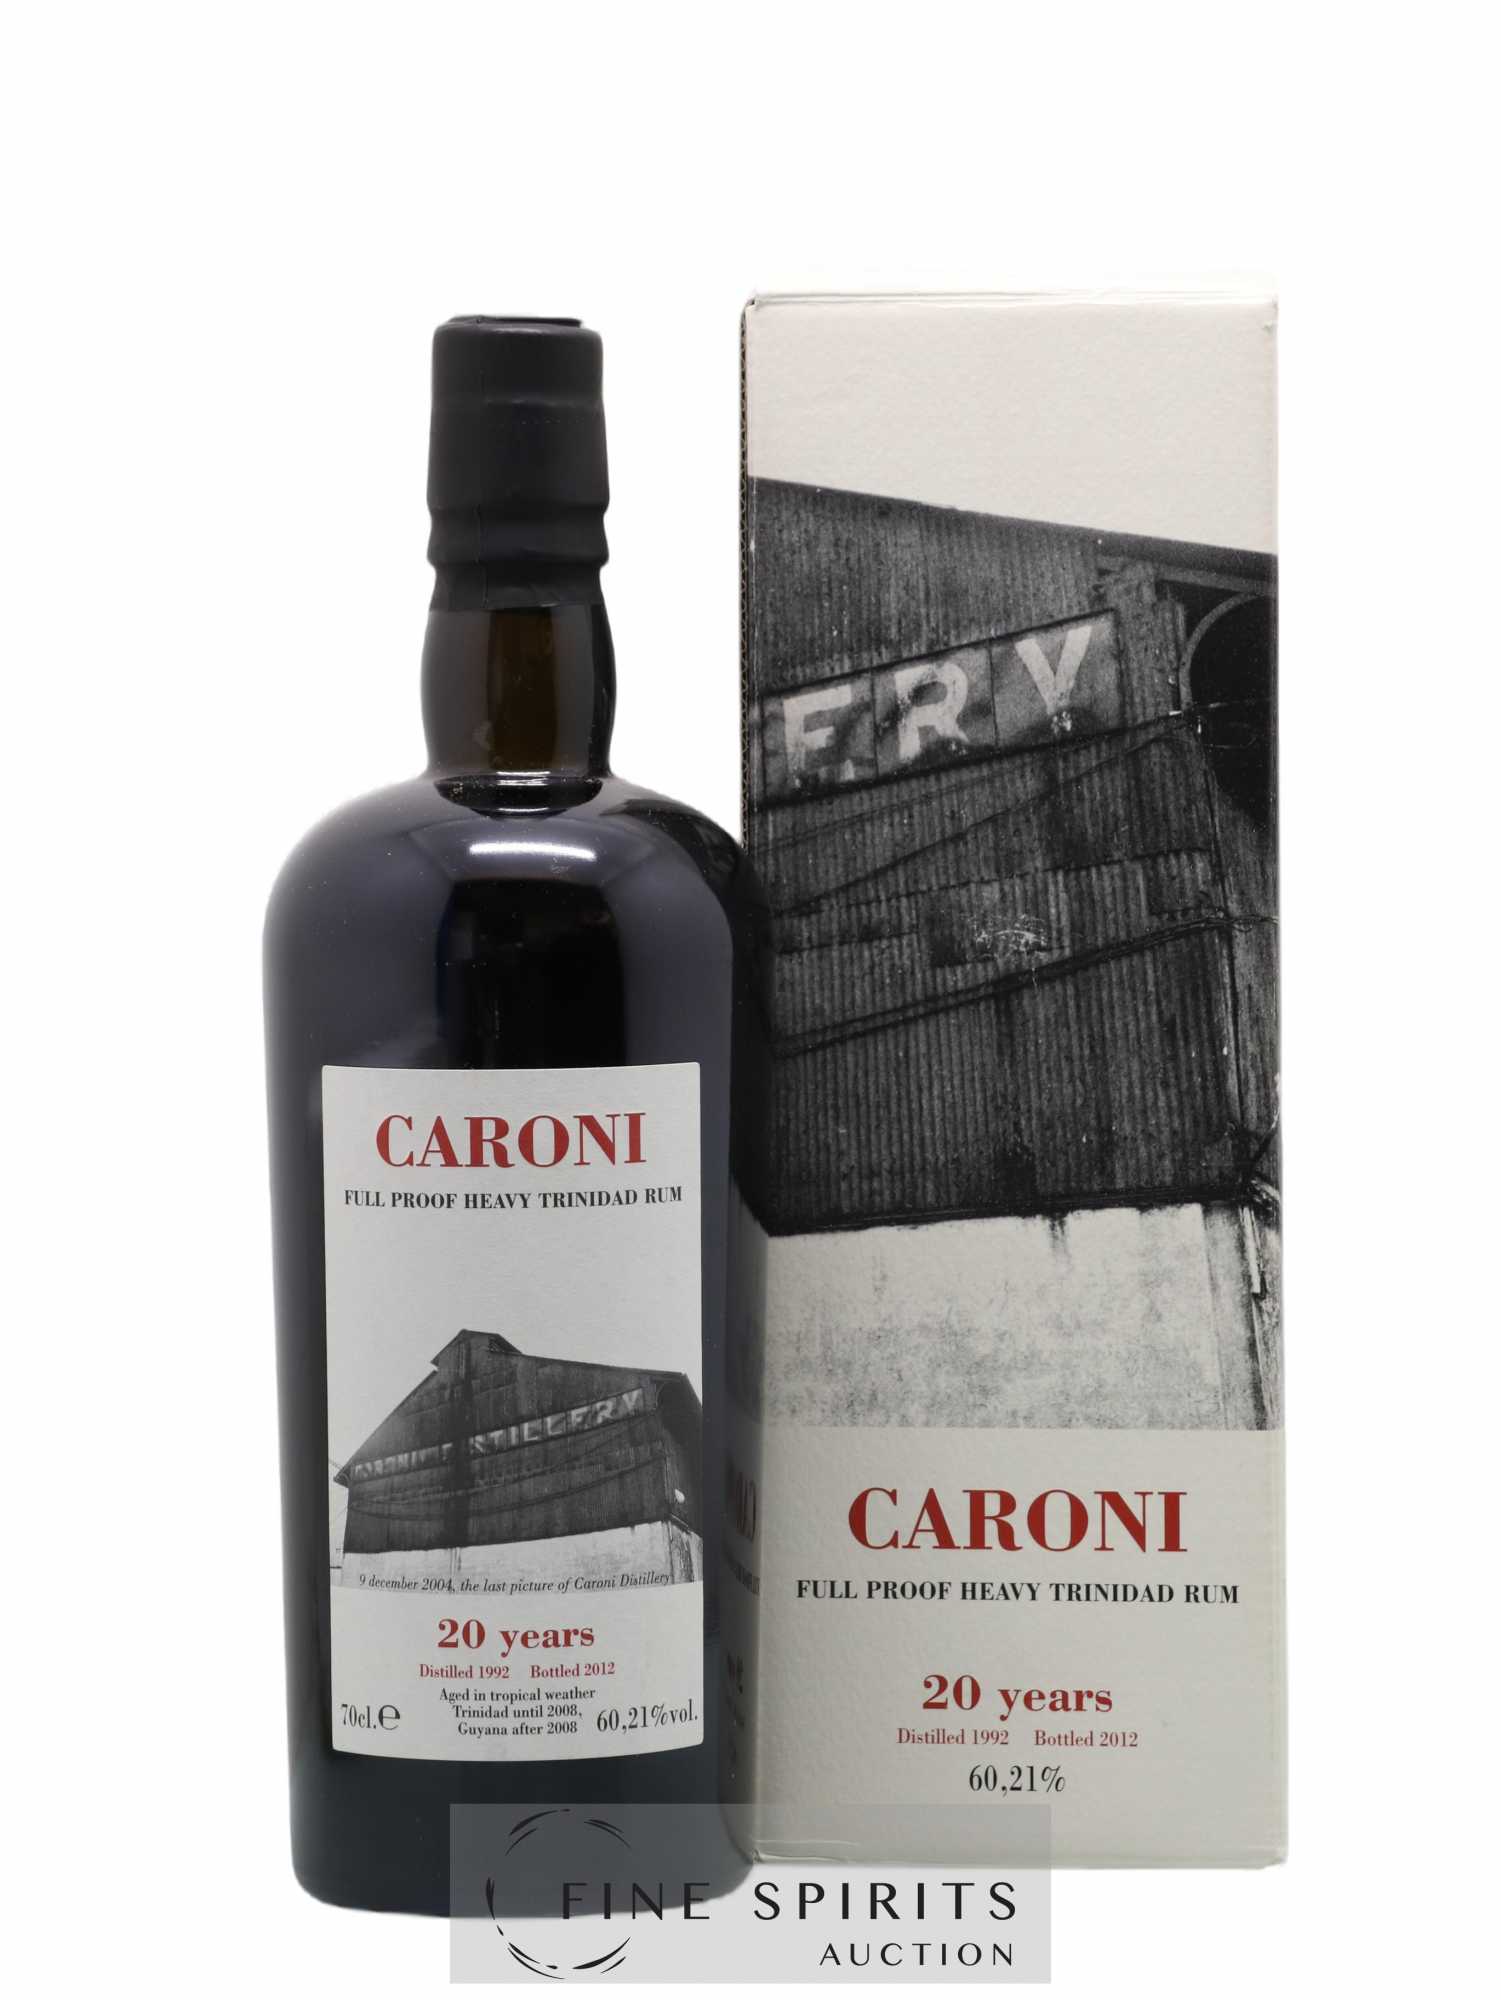 Caroni 20 years 1992 Velier Full Proof 1621 bottles - bottled 2012 